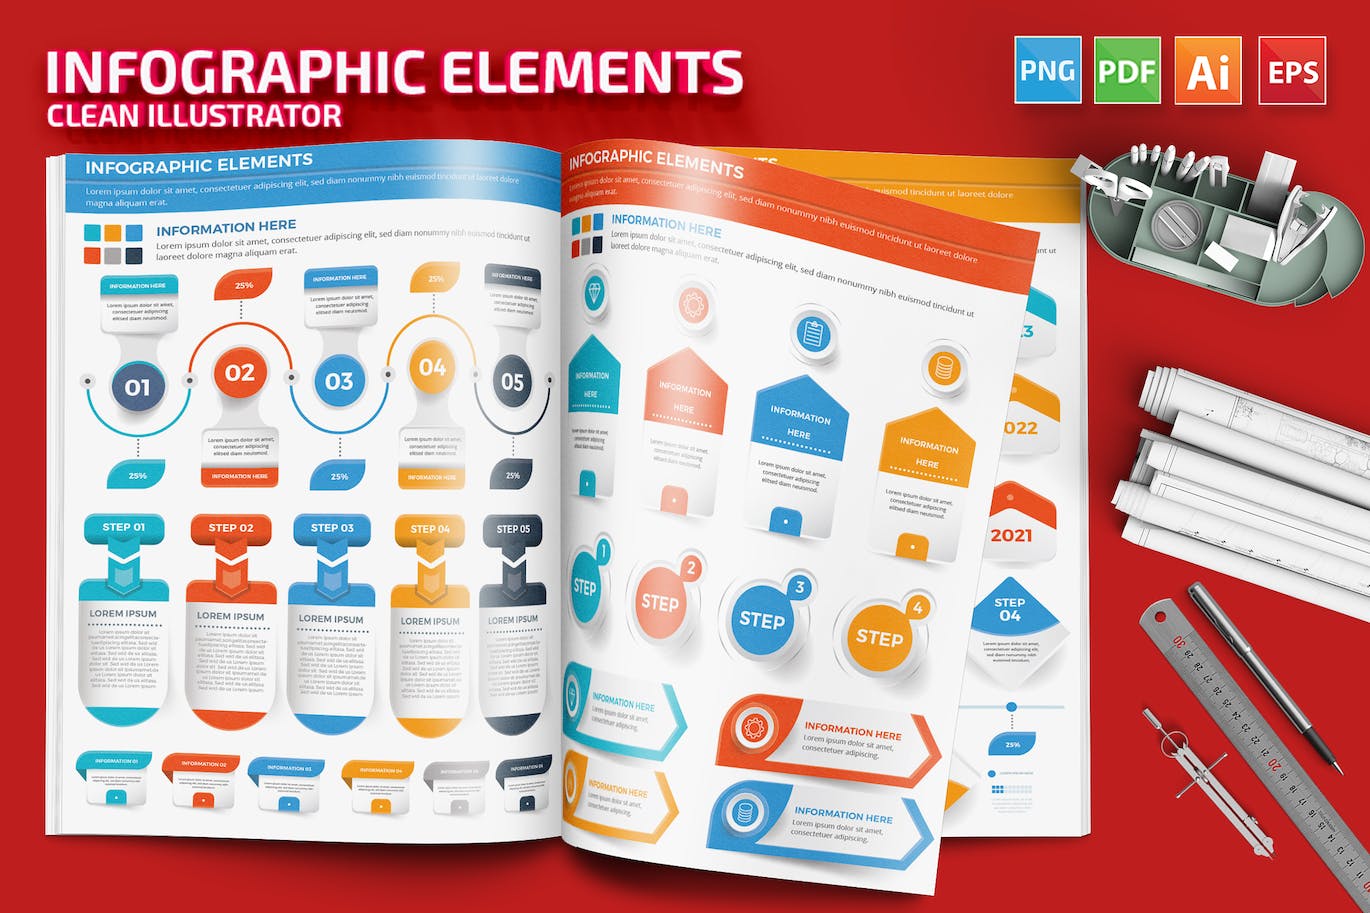 流程步骤图表元素设计素材 Infographic Elements 幻灯图表 第1张